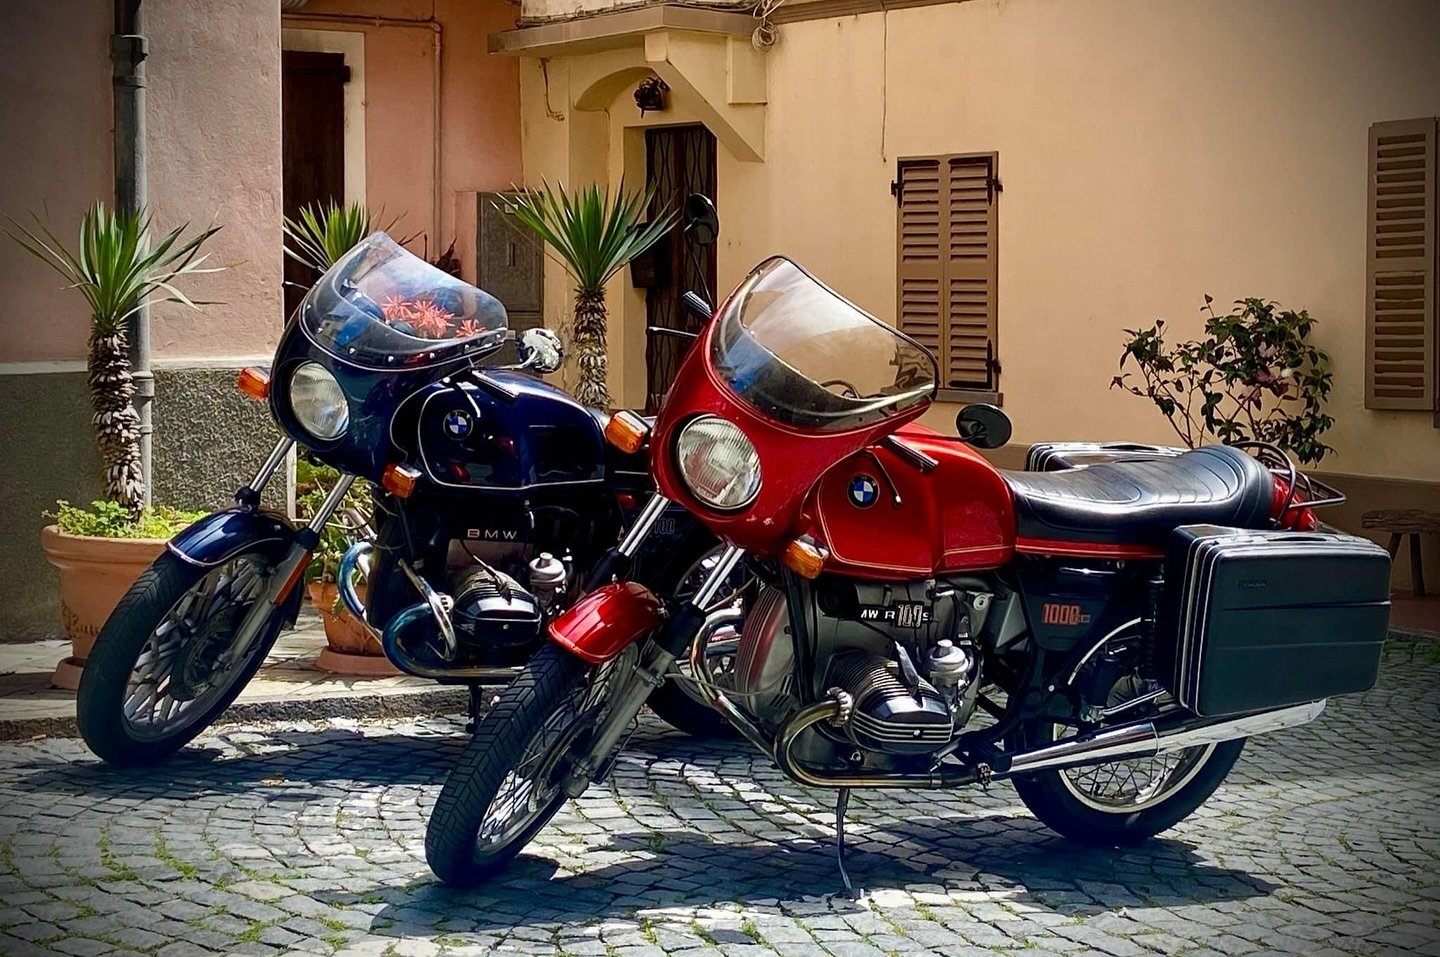 BMW R100S &amp; R100CS - Greetings from Italy 🏍️🇮🇹
📸Enrico Giovanni Carluccio
#bmwmotorrad #bmw #motorcycle #classic #vintage 
www.darkshadowgarage.com